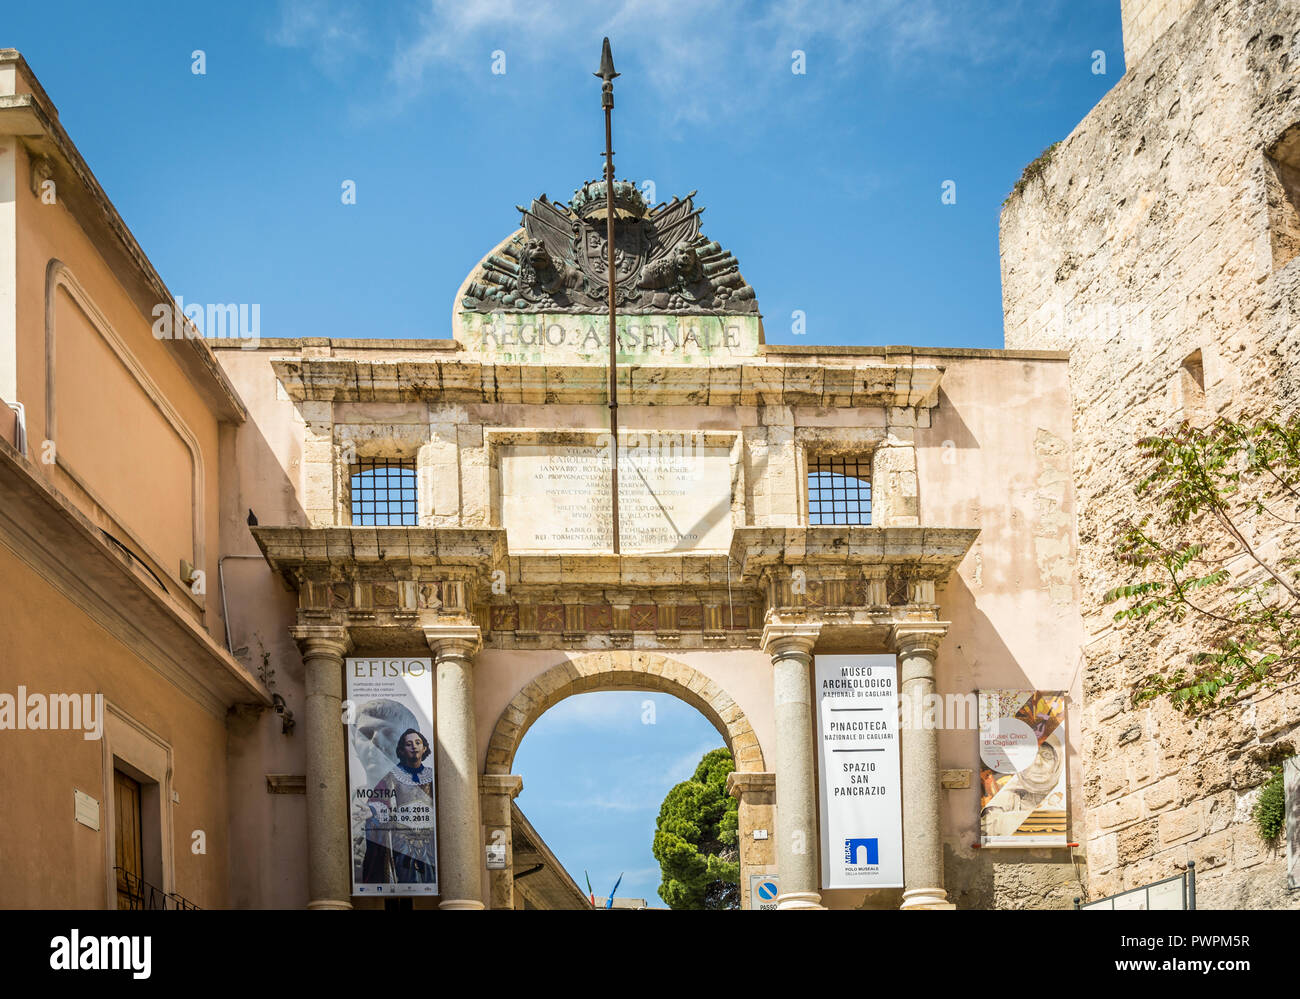 Ingresso al Museo Archeologico Nazionale nel quartiere del Castello di Cagliari, Sardegna. Il museo si trova nel centro storico di Cagliari Foto Stock